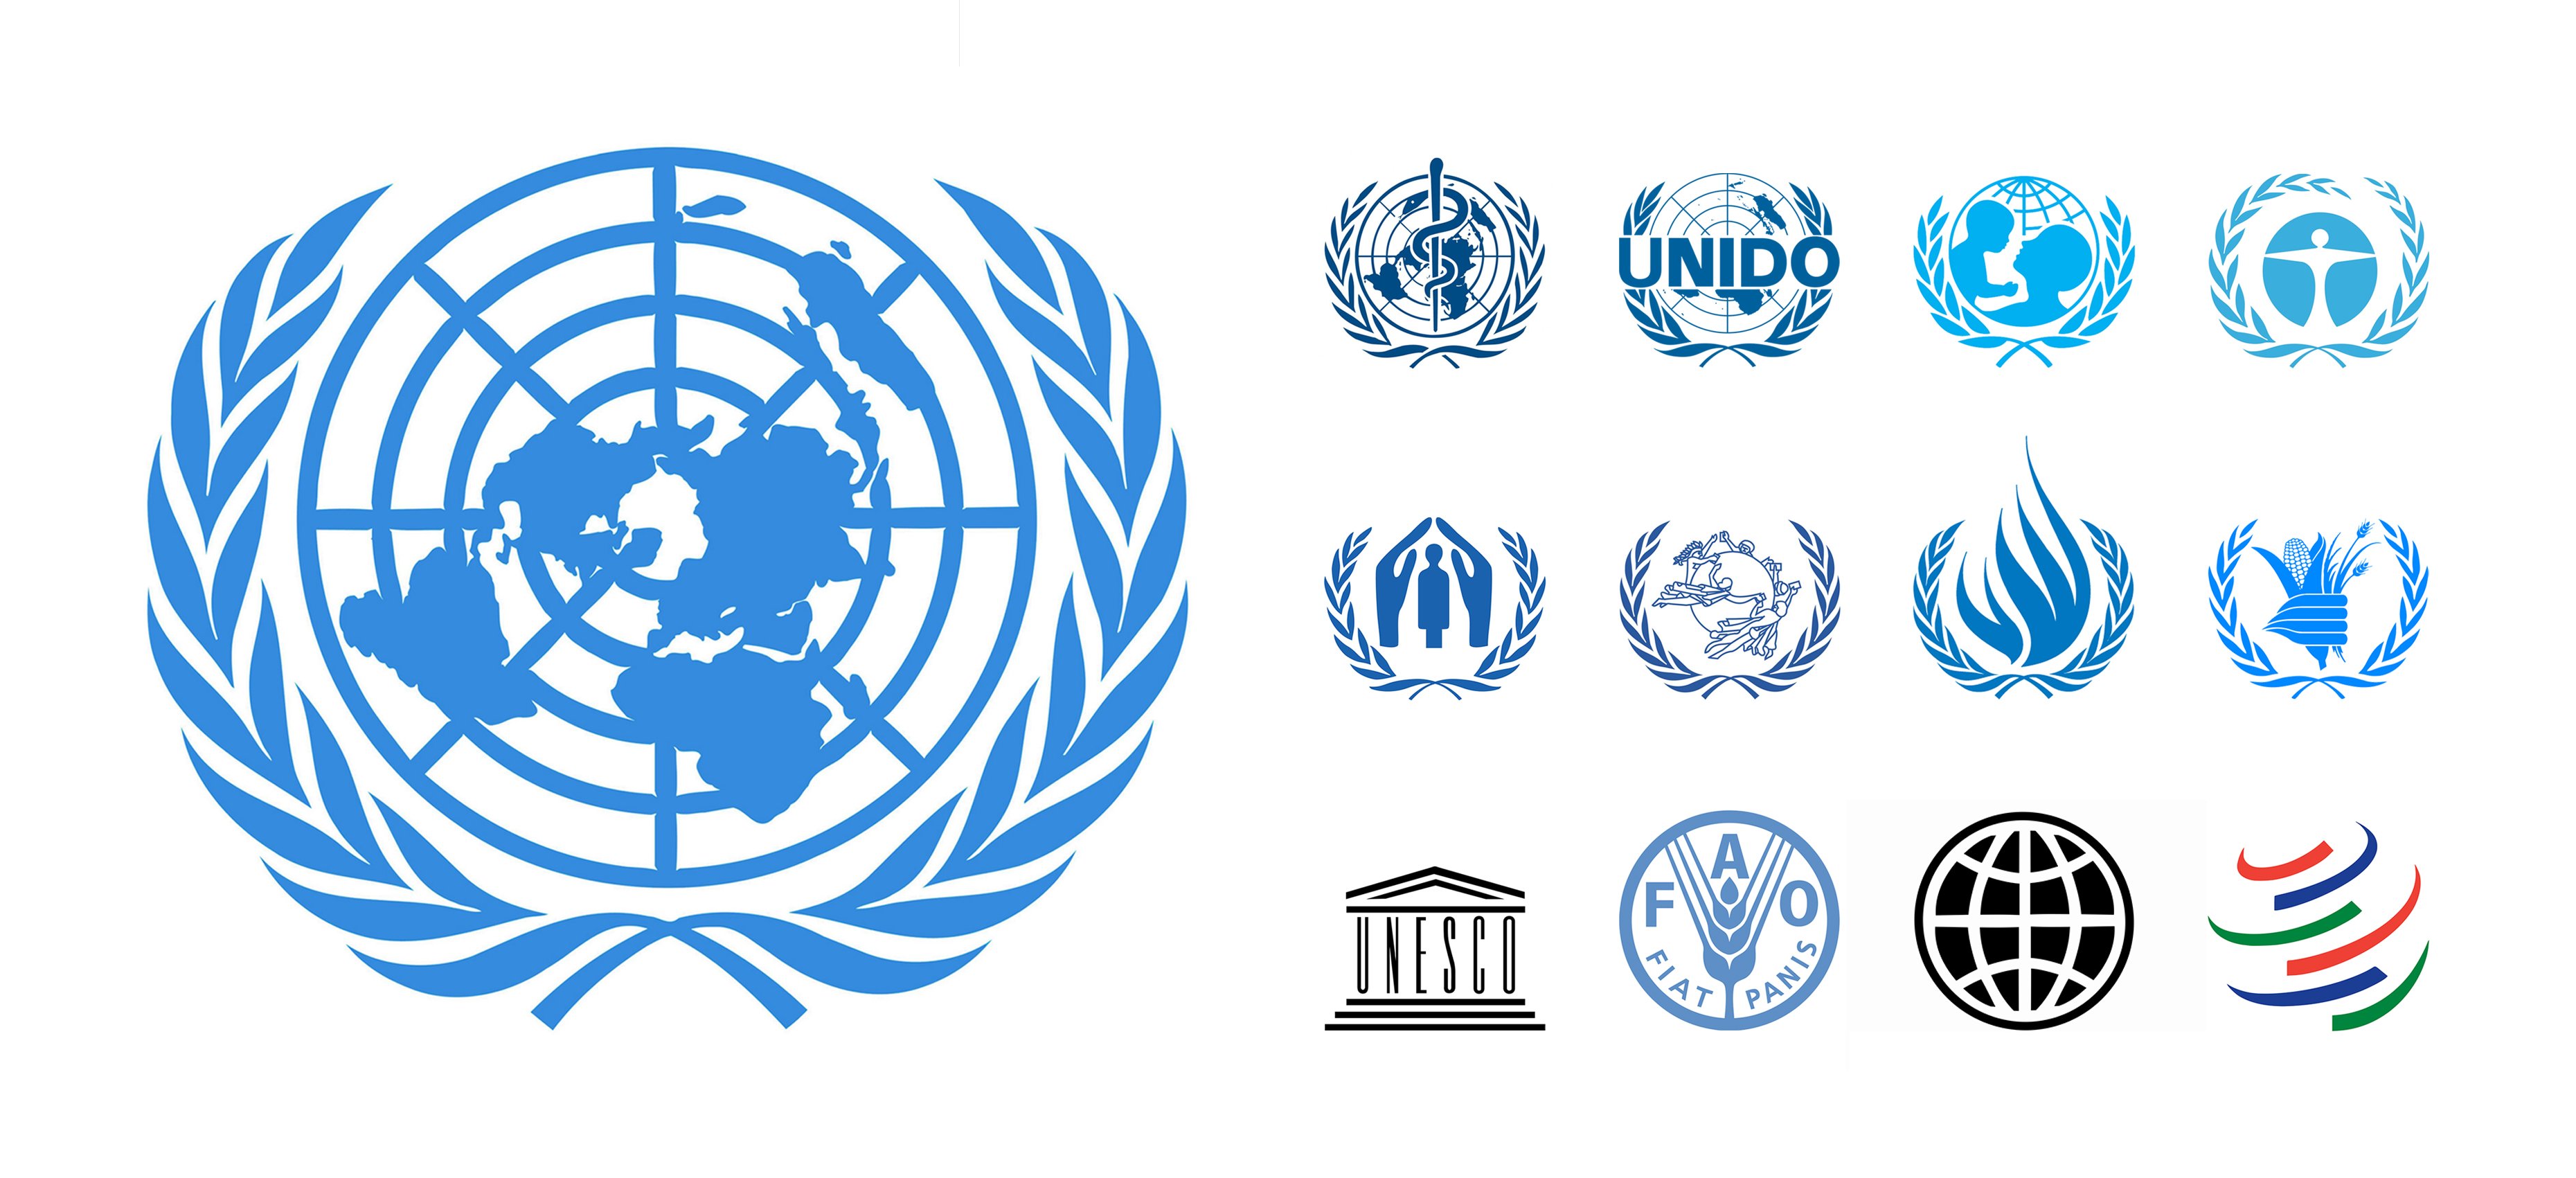 Фонды снг. Организация Объединенных наций ЮНЕСКО. Лого организация Объединенных наций (ООН). Международные экономические организации эмблемы.